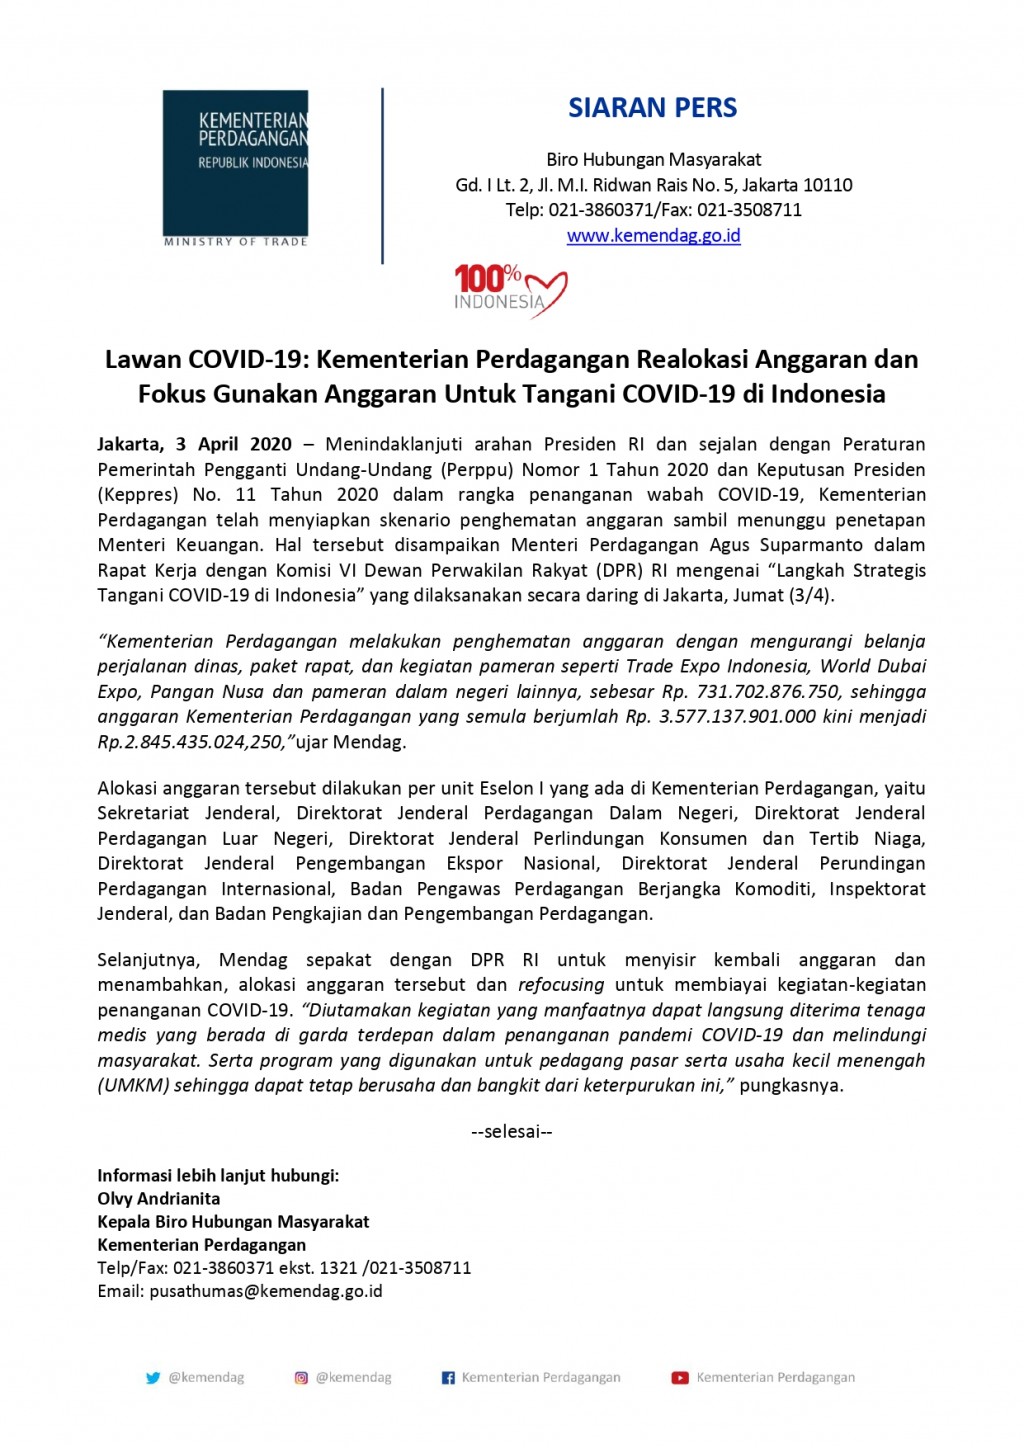 Lawan COVID-19: Kementerian Perdagangan Realokasi Anggaran dan Fokus Gunakan Anggaran Untuk Tangani COVID-19 di Indonesia